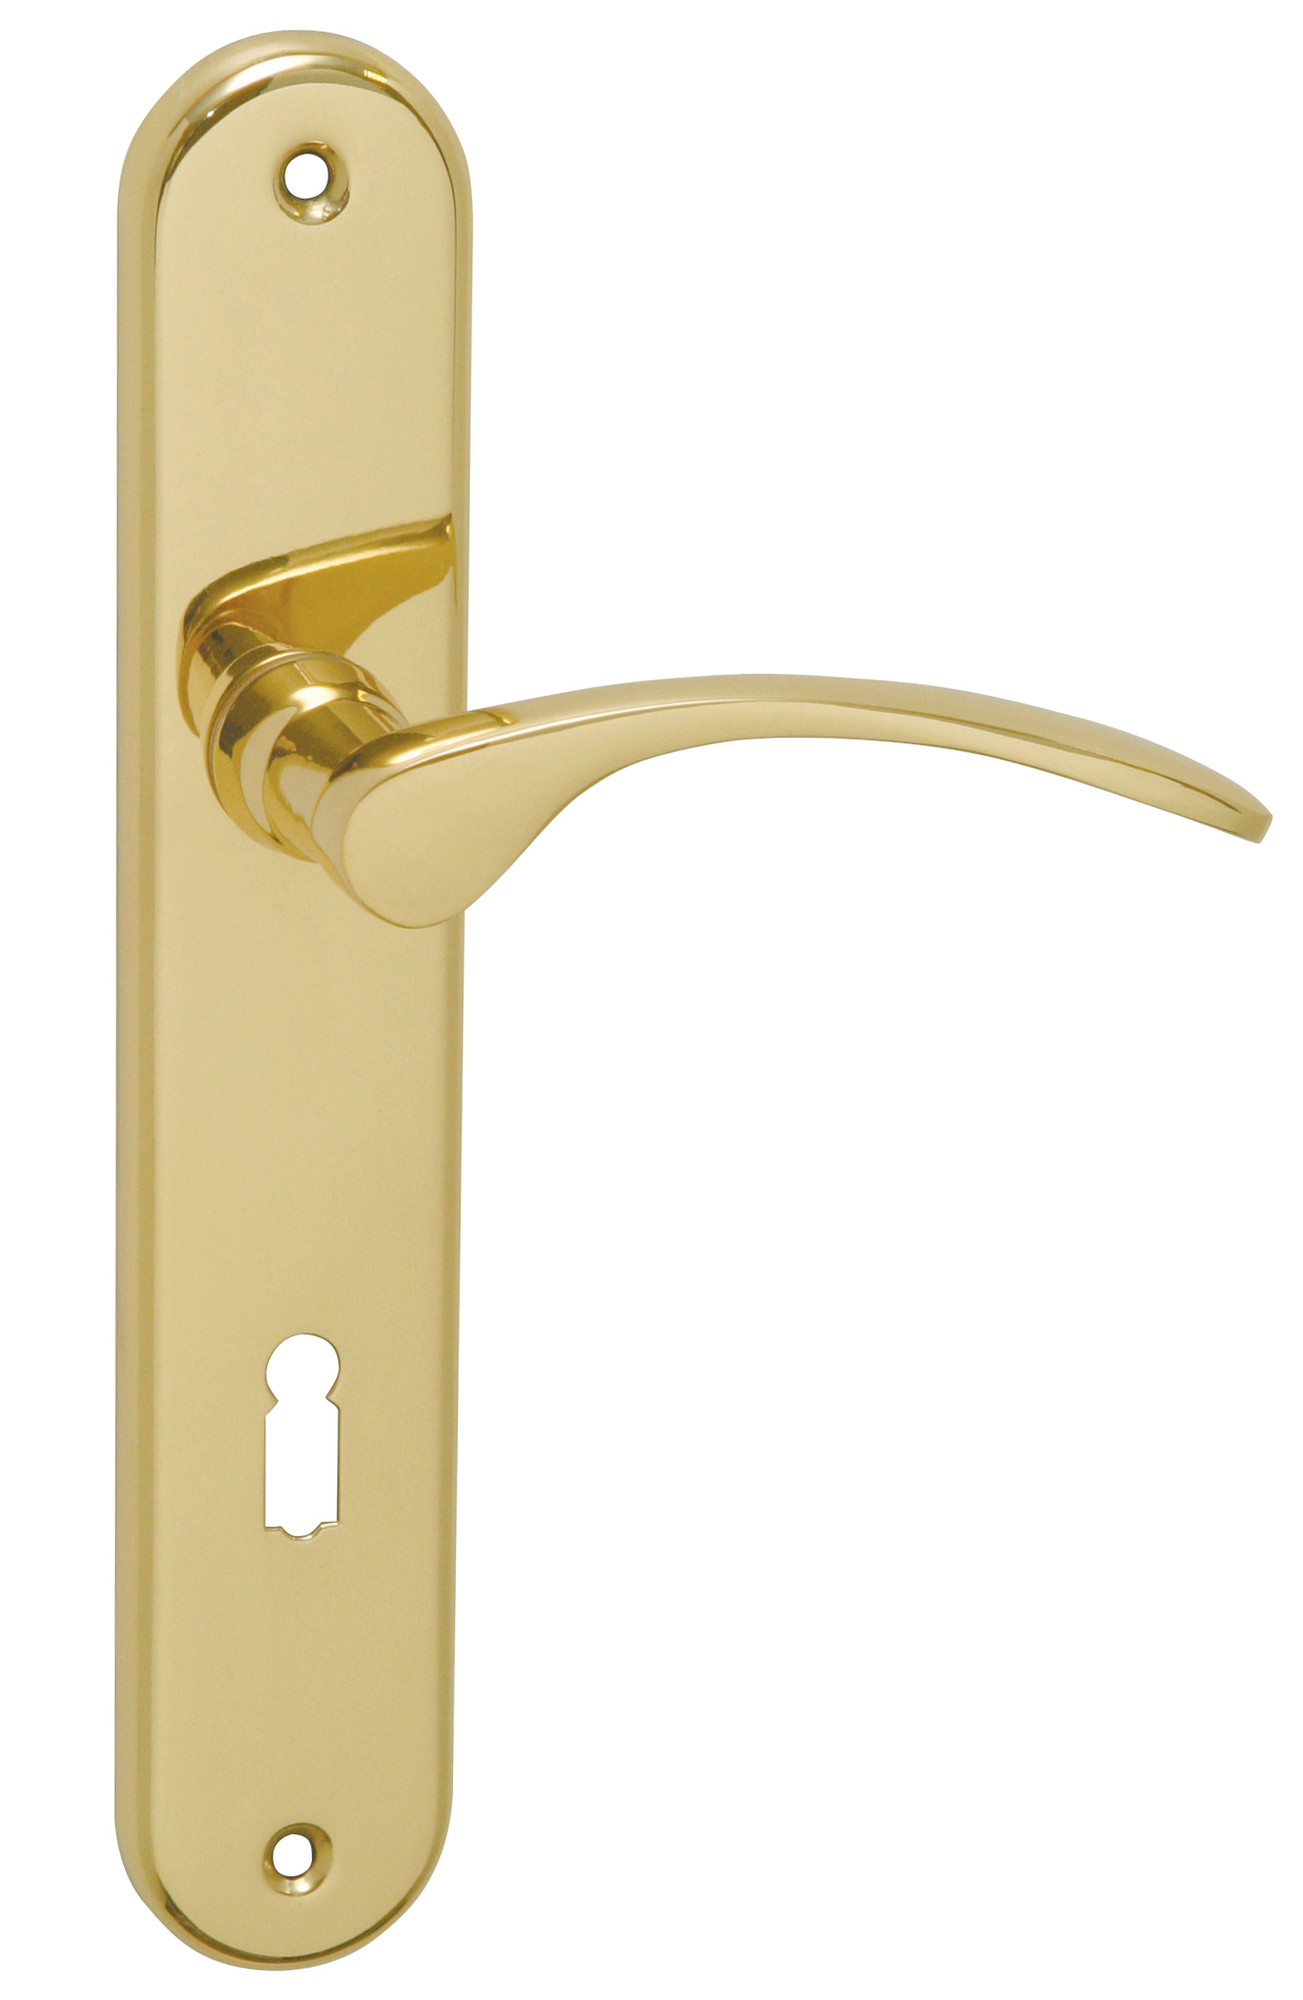 E-shop MT - JANA - SO WC kľúč, 72 mm, kľučka/kľučka